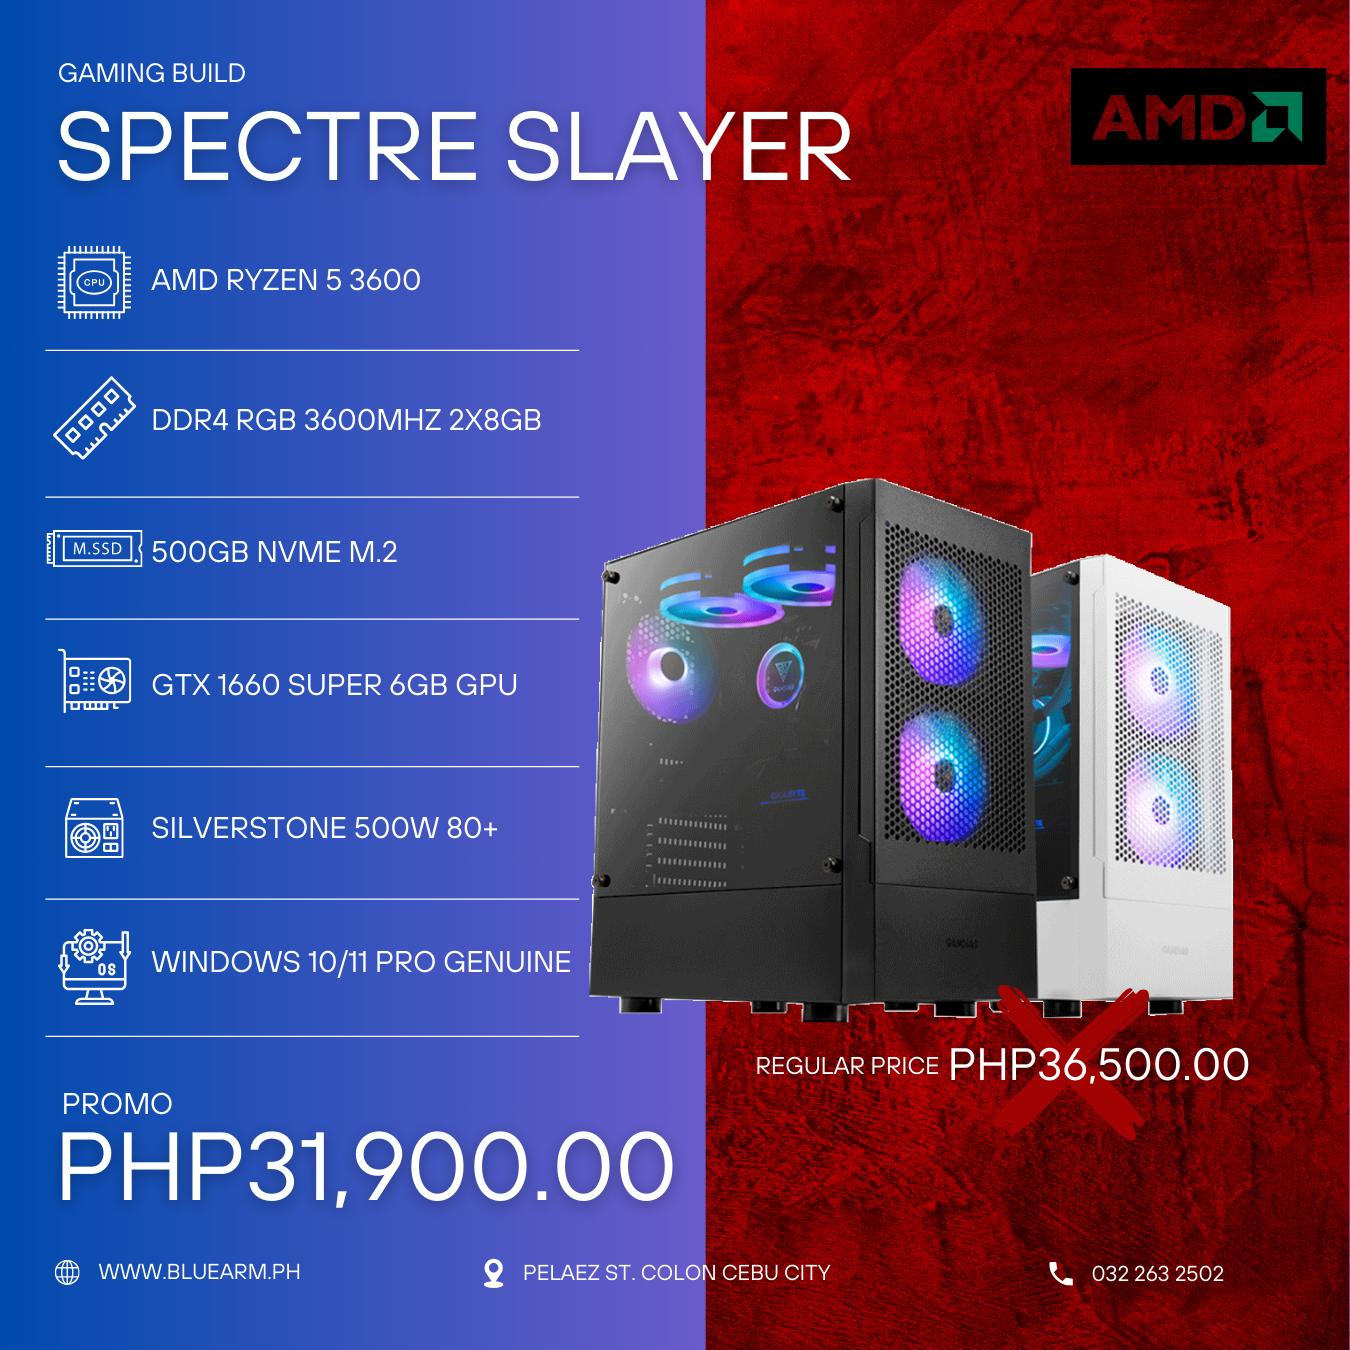 AMD RYZEN 5 3600 GAMING BUILD SPECTRE